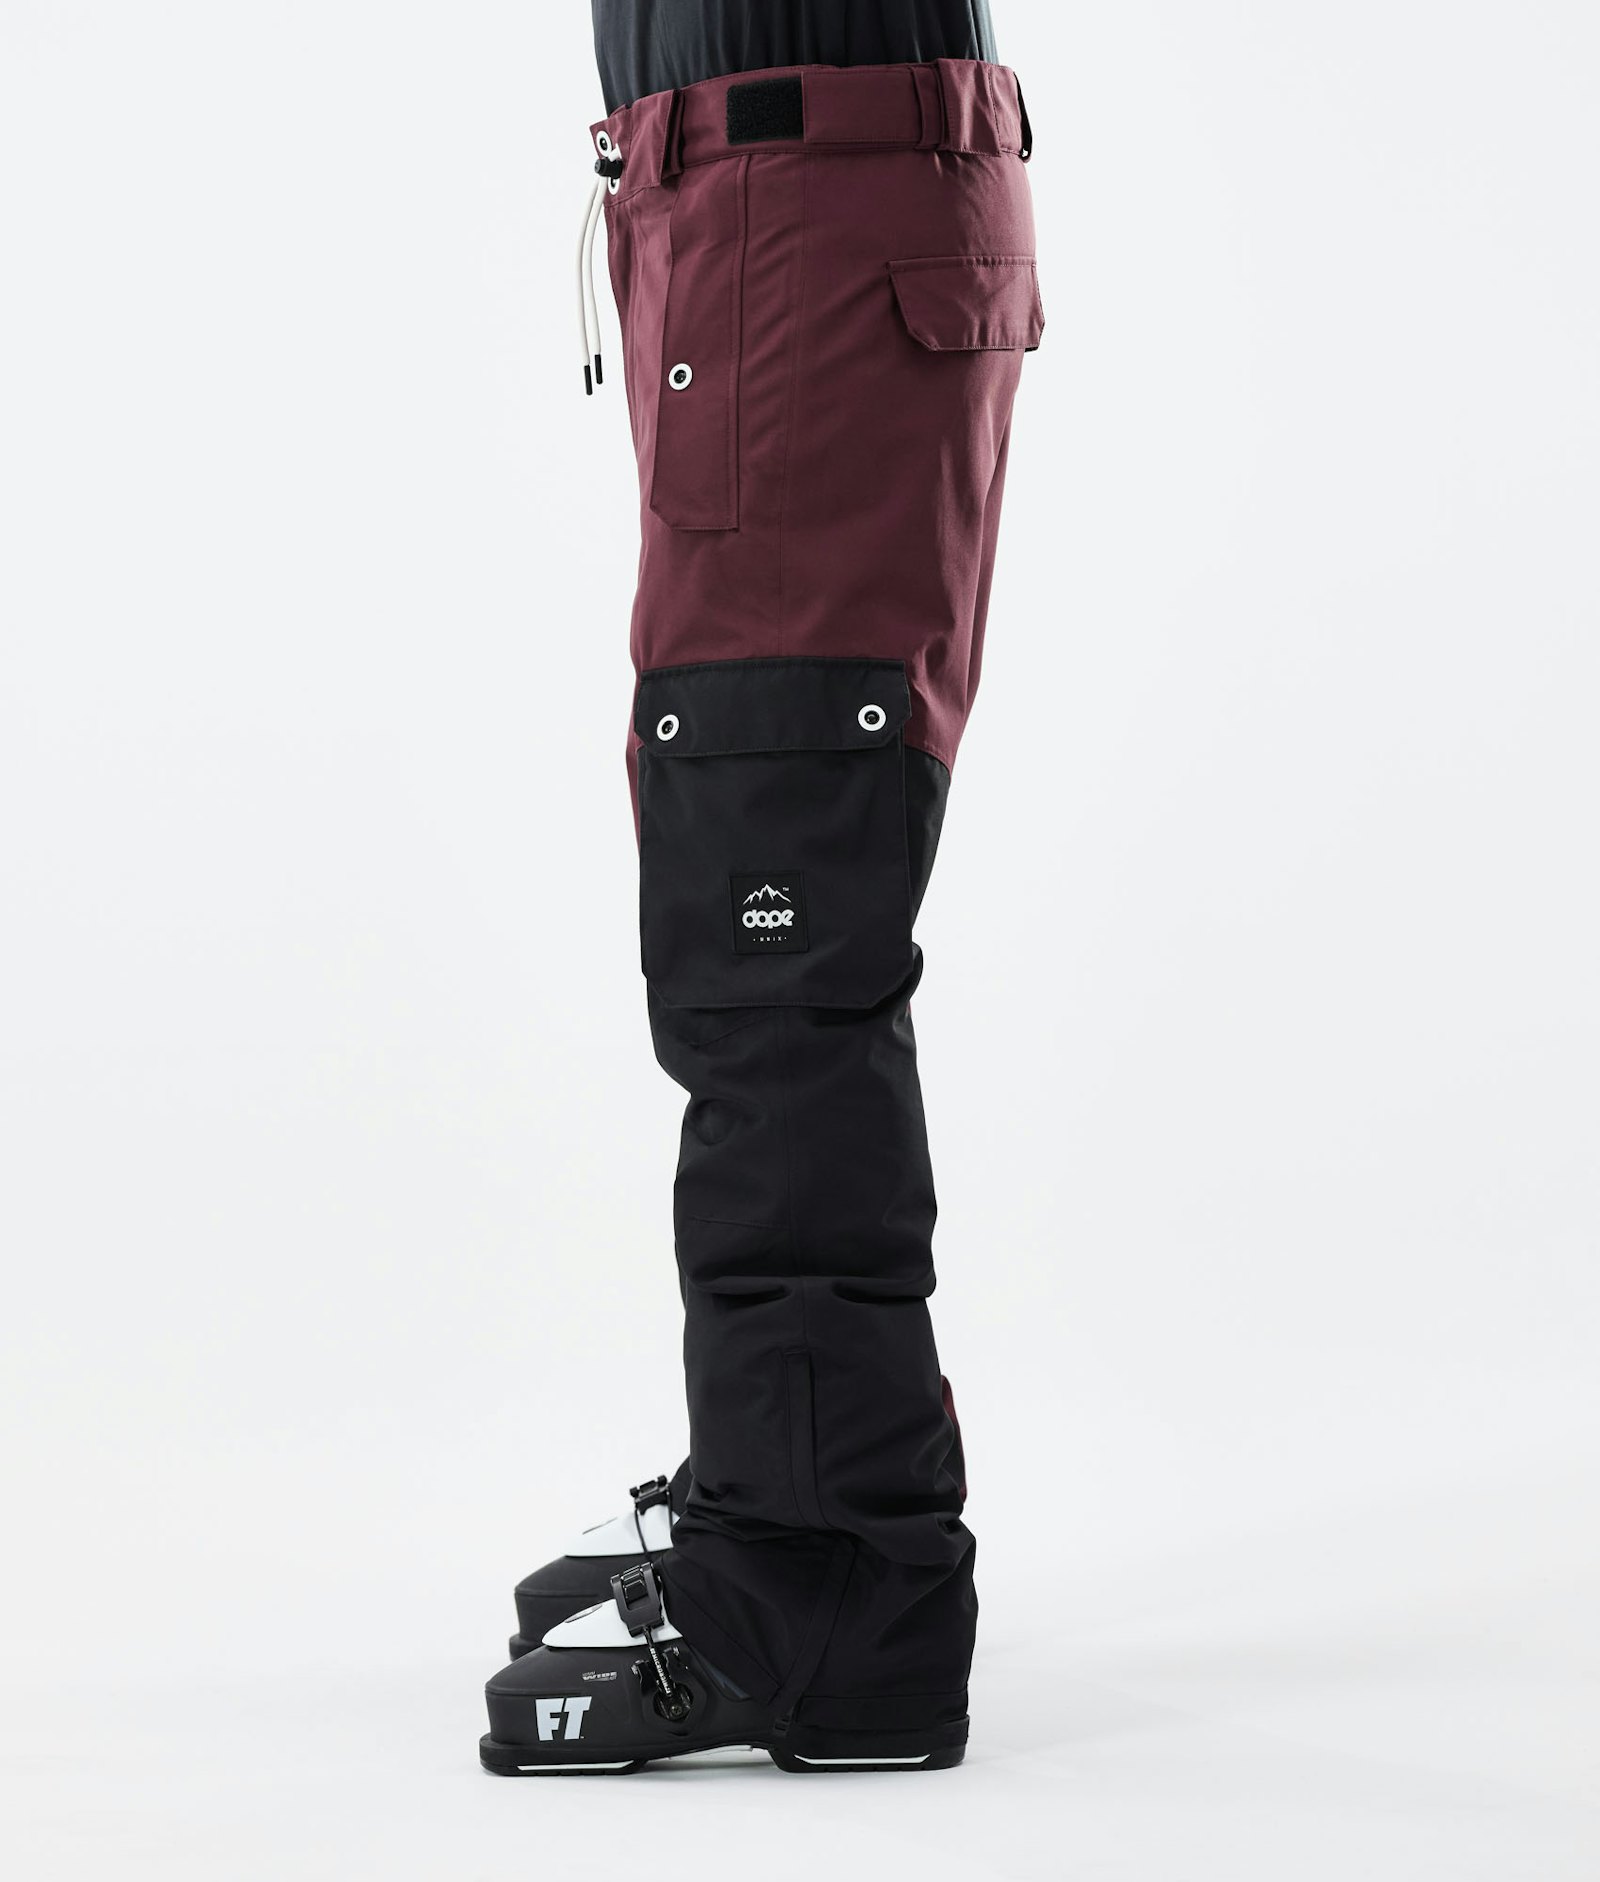 Adept 2021 Pantalon de Ski Homme Burgundy/Black